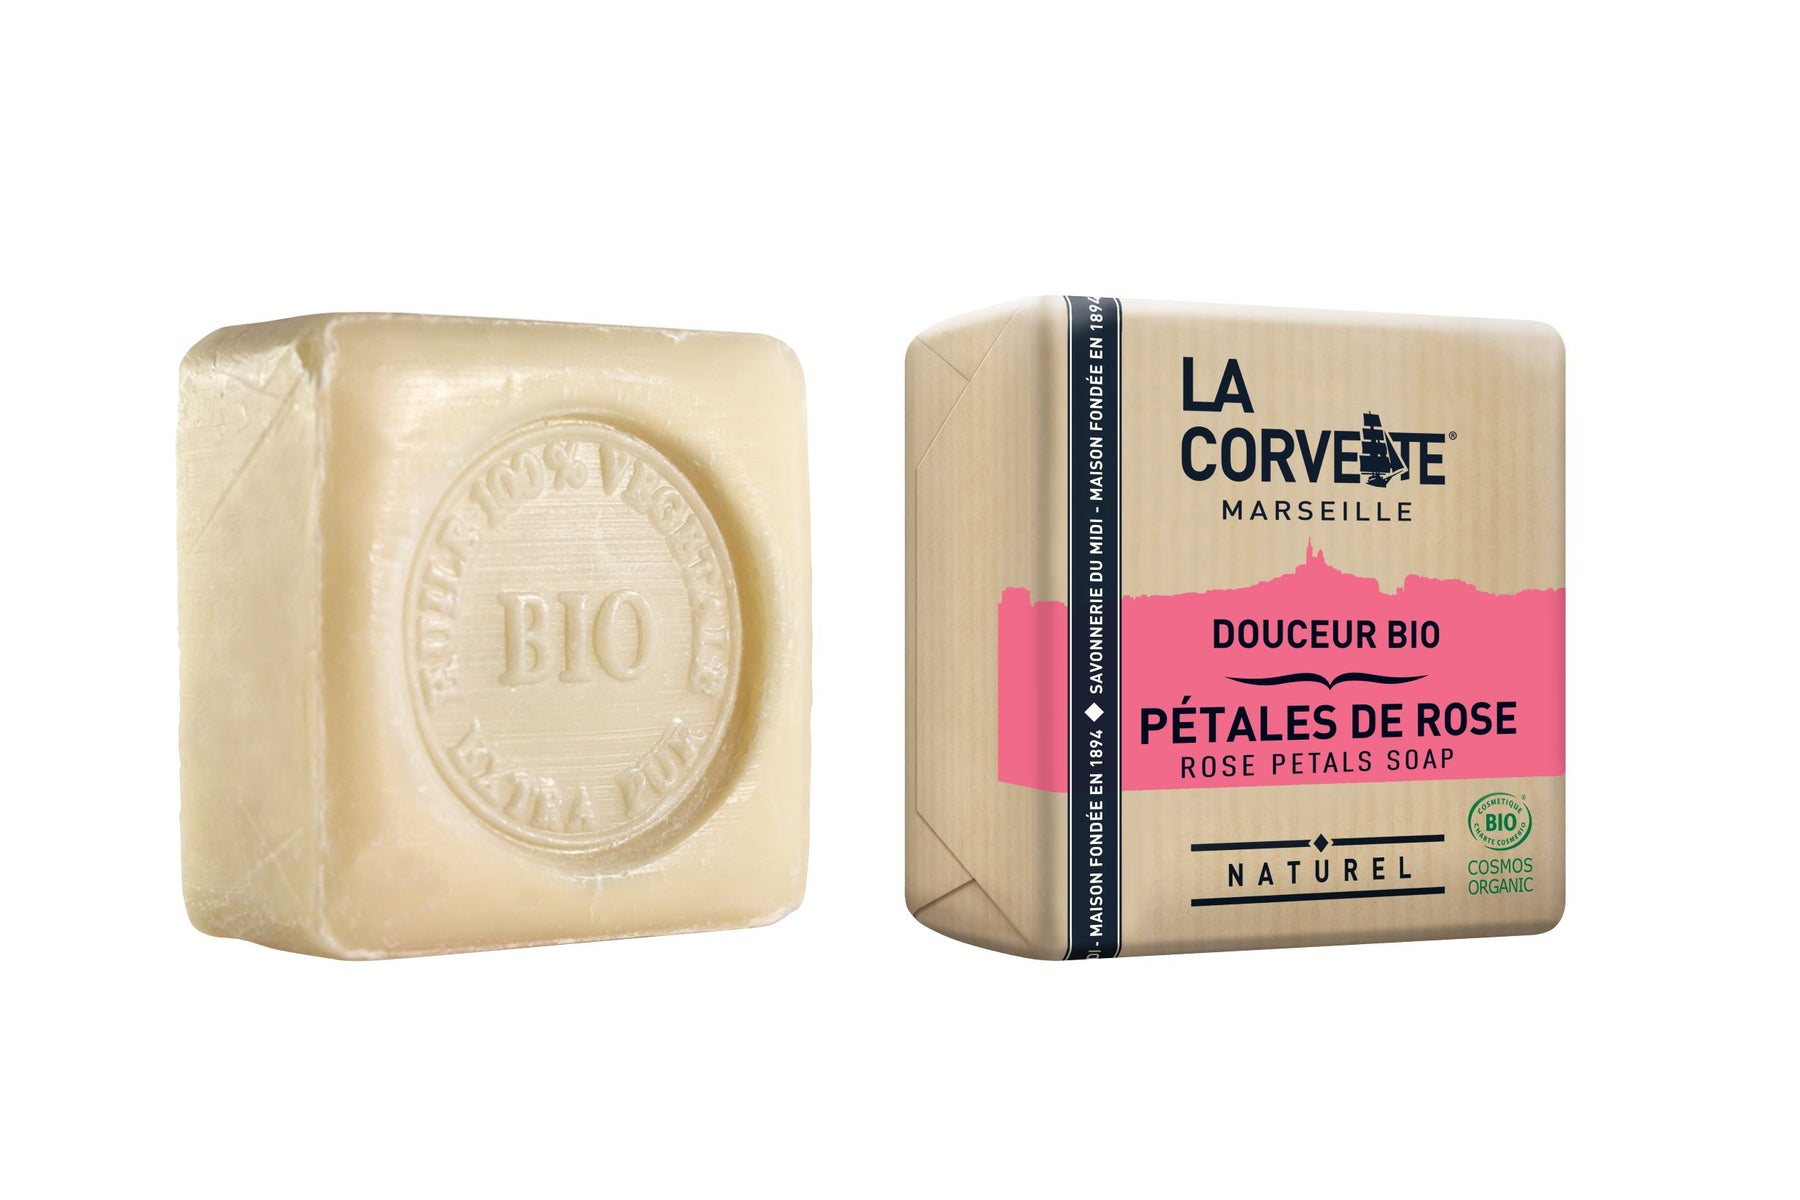 Marseille Dish Soap with Aloe Vera by La Corvette